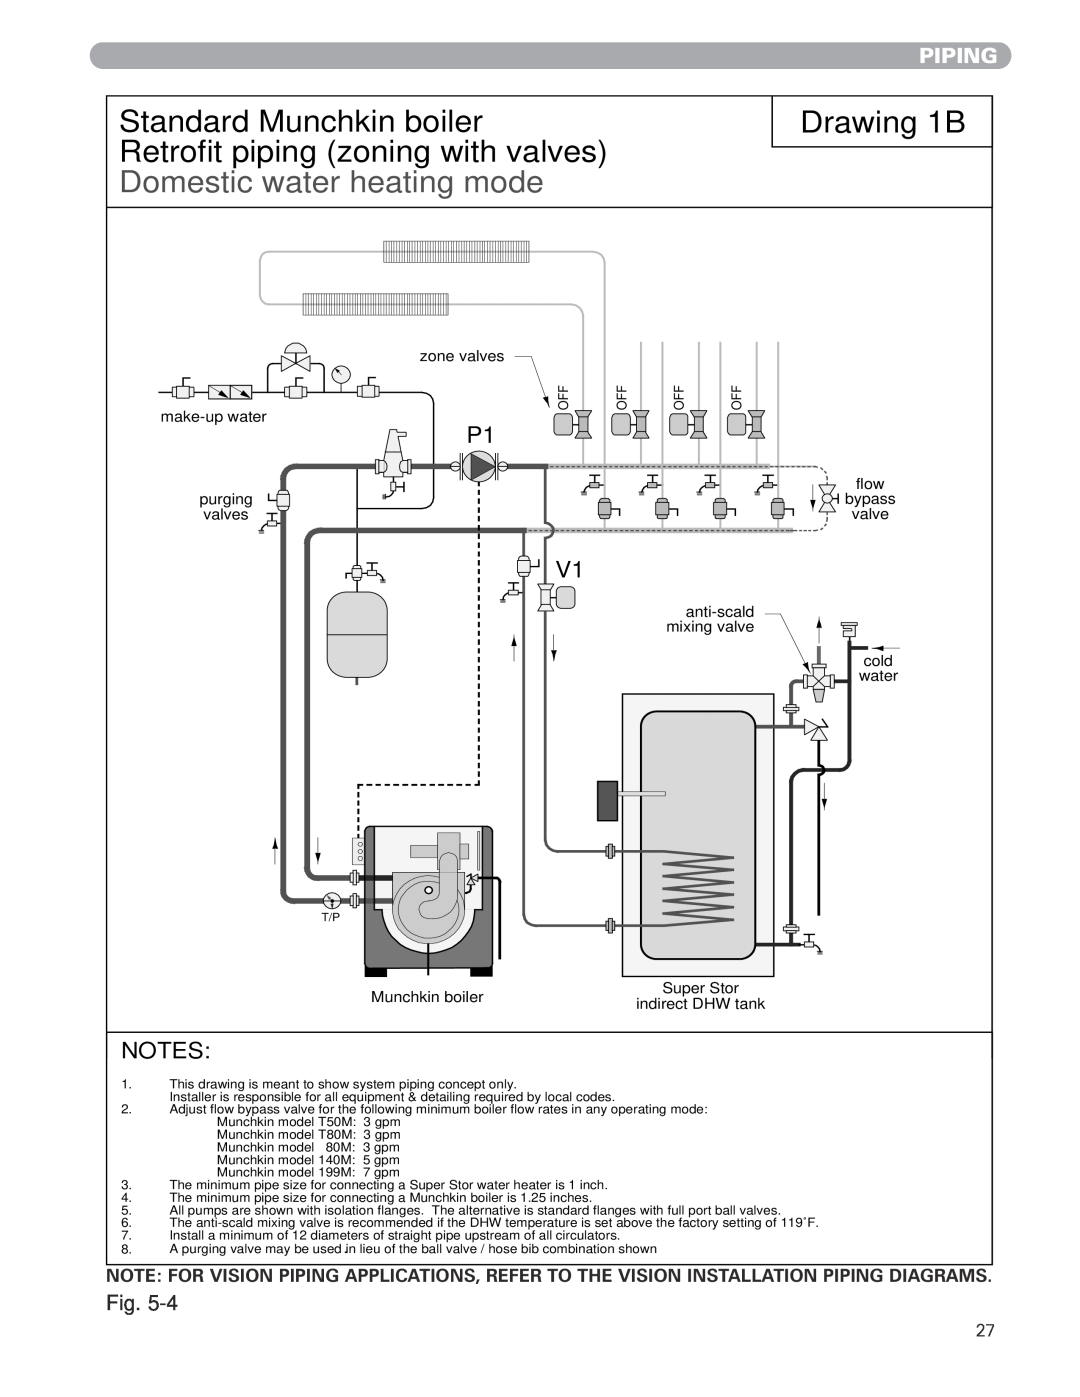 Munchkin MUNCHKIN HIGH EFFICIENCY HEATER with the "925" Controller manual Drawing 1B, Standard Munchkin boiler, Piping 